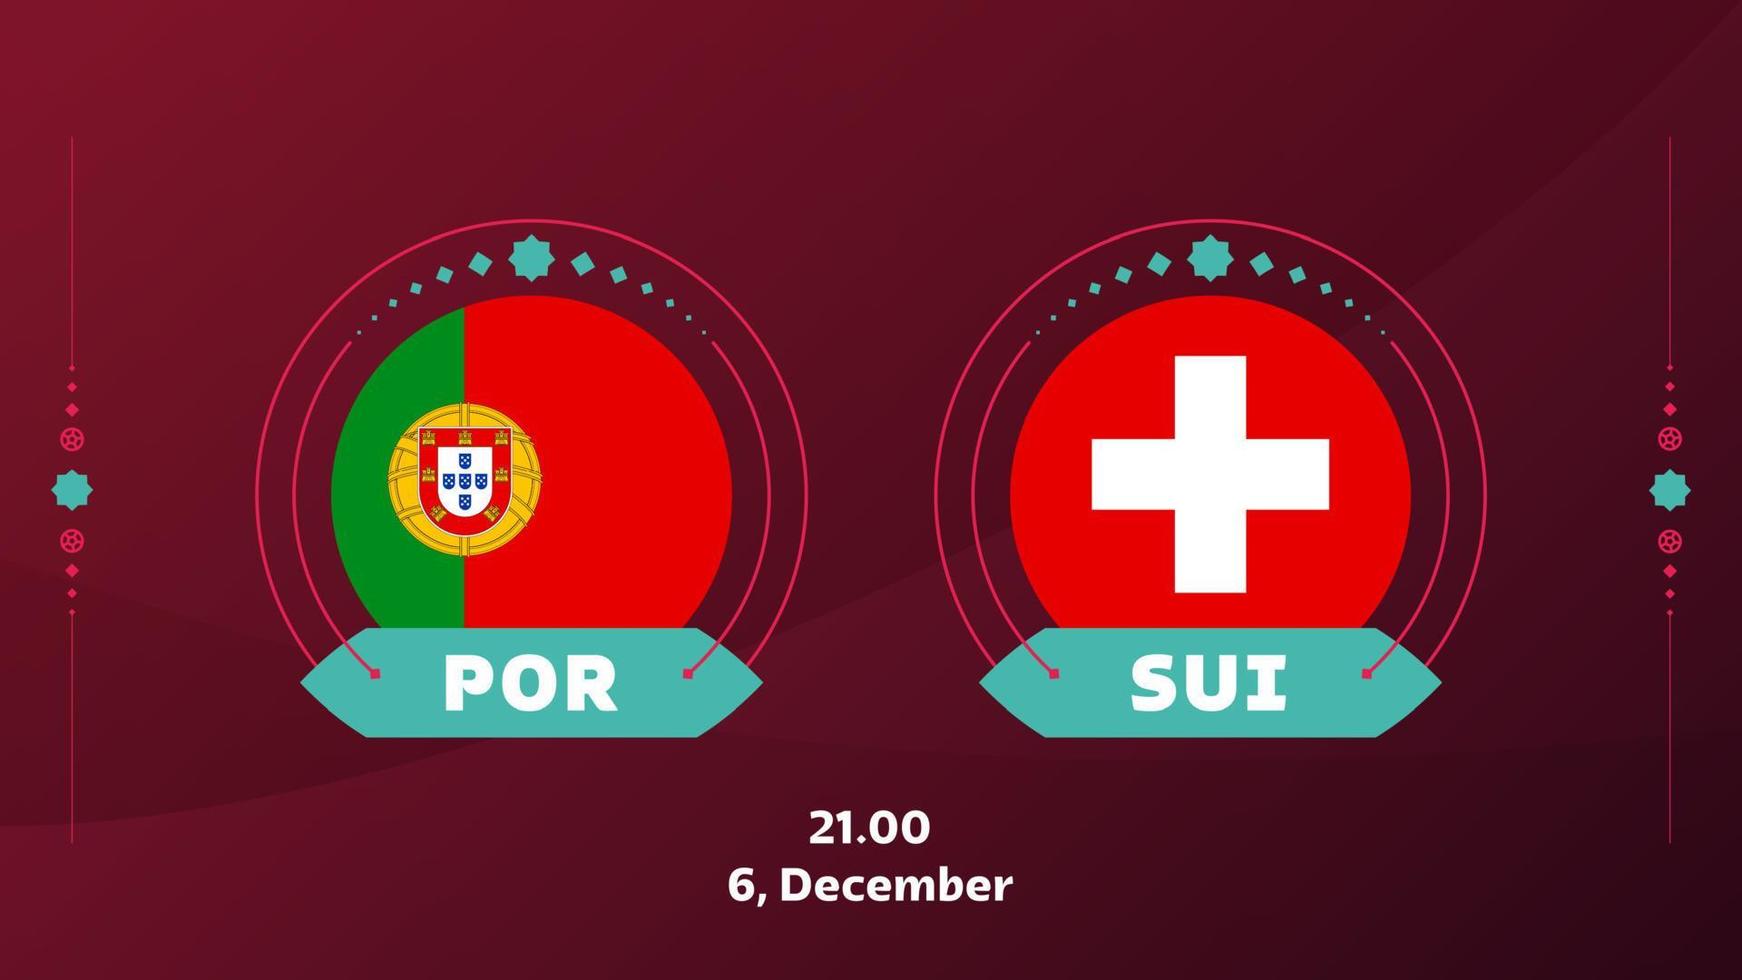 portugal suisse séries éliminatoires de 16 matchs de football 2022. match de championnat du monde de football 2022 contre les équipes intro fond de sport, affiche de compétition de championnat, image vectorielle vecteur